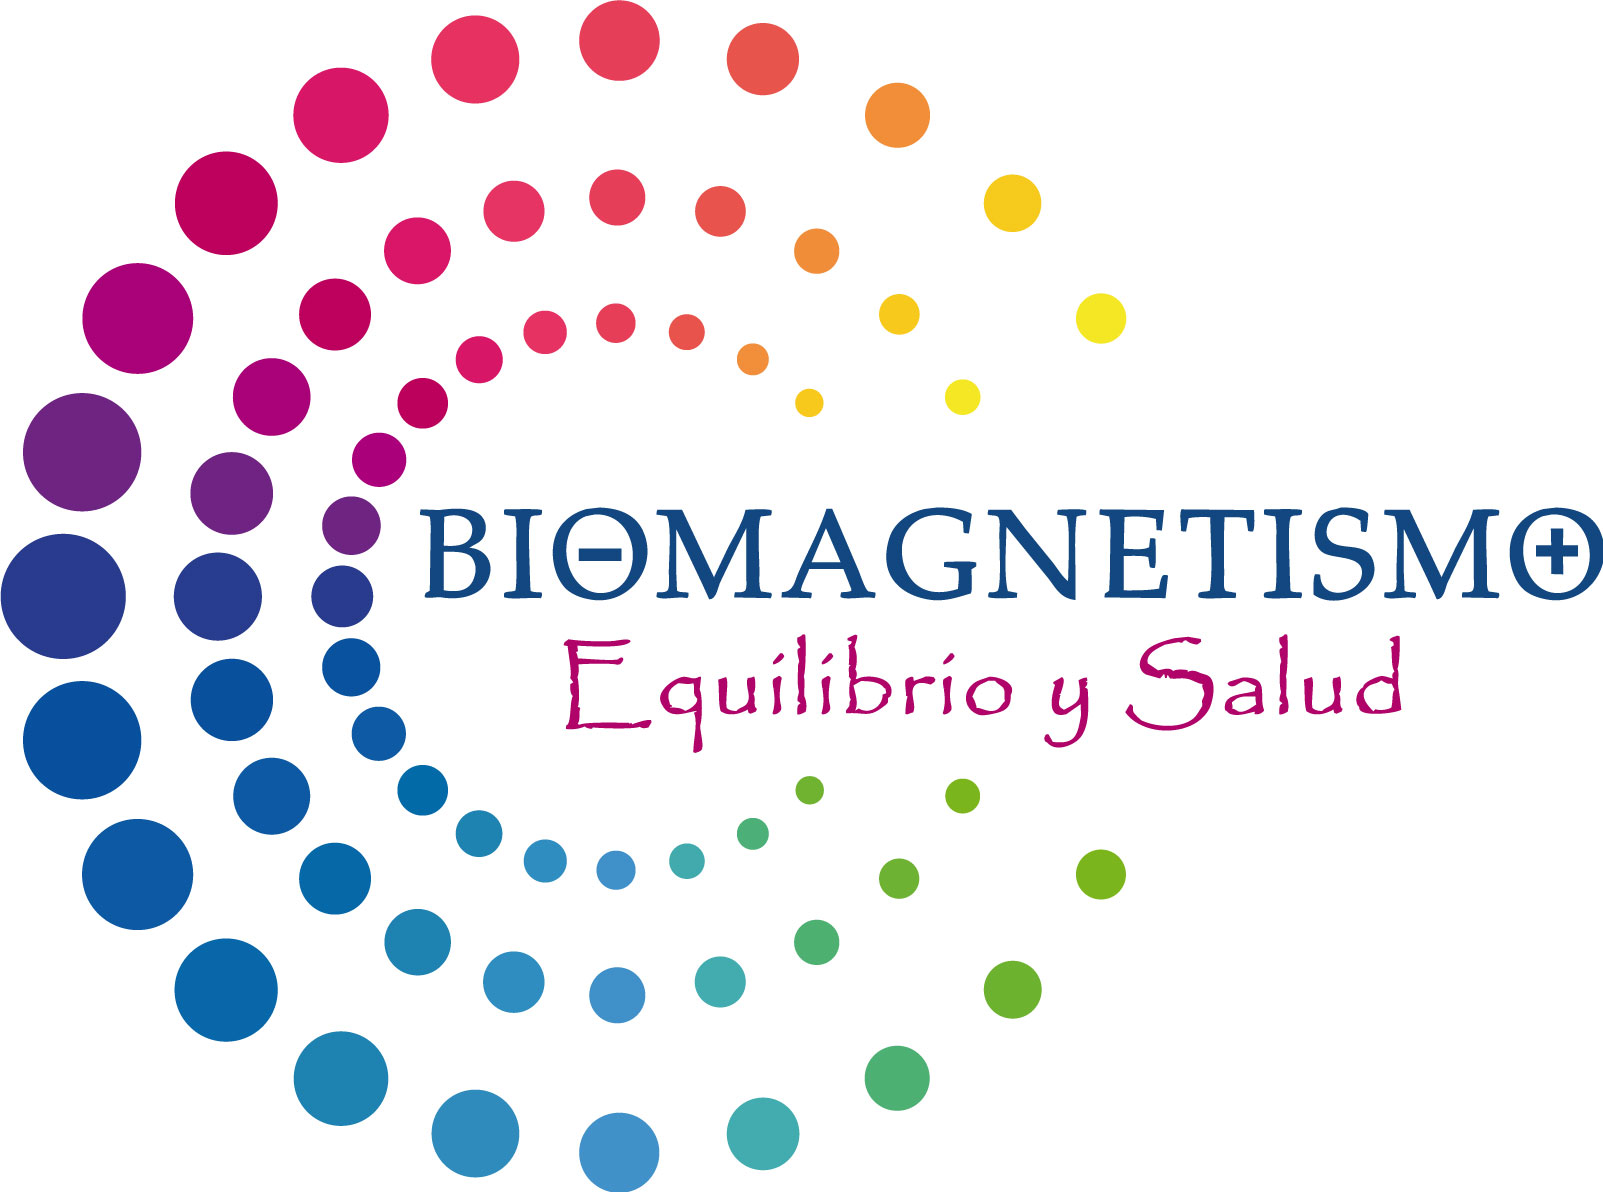 Biomagnetismo equilibrio y salud